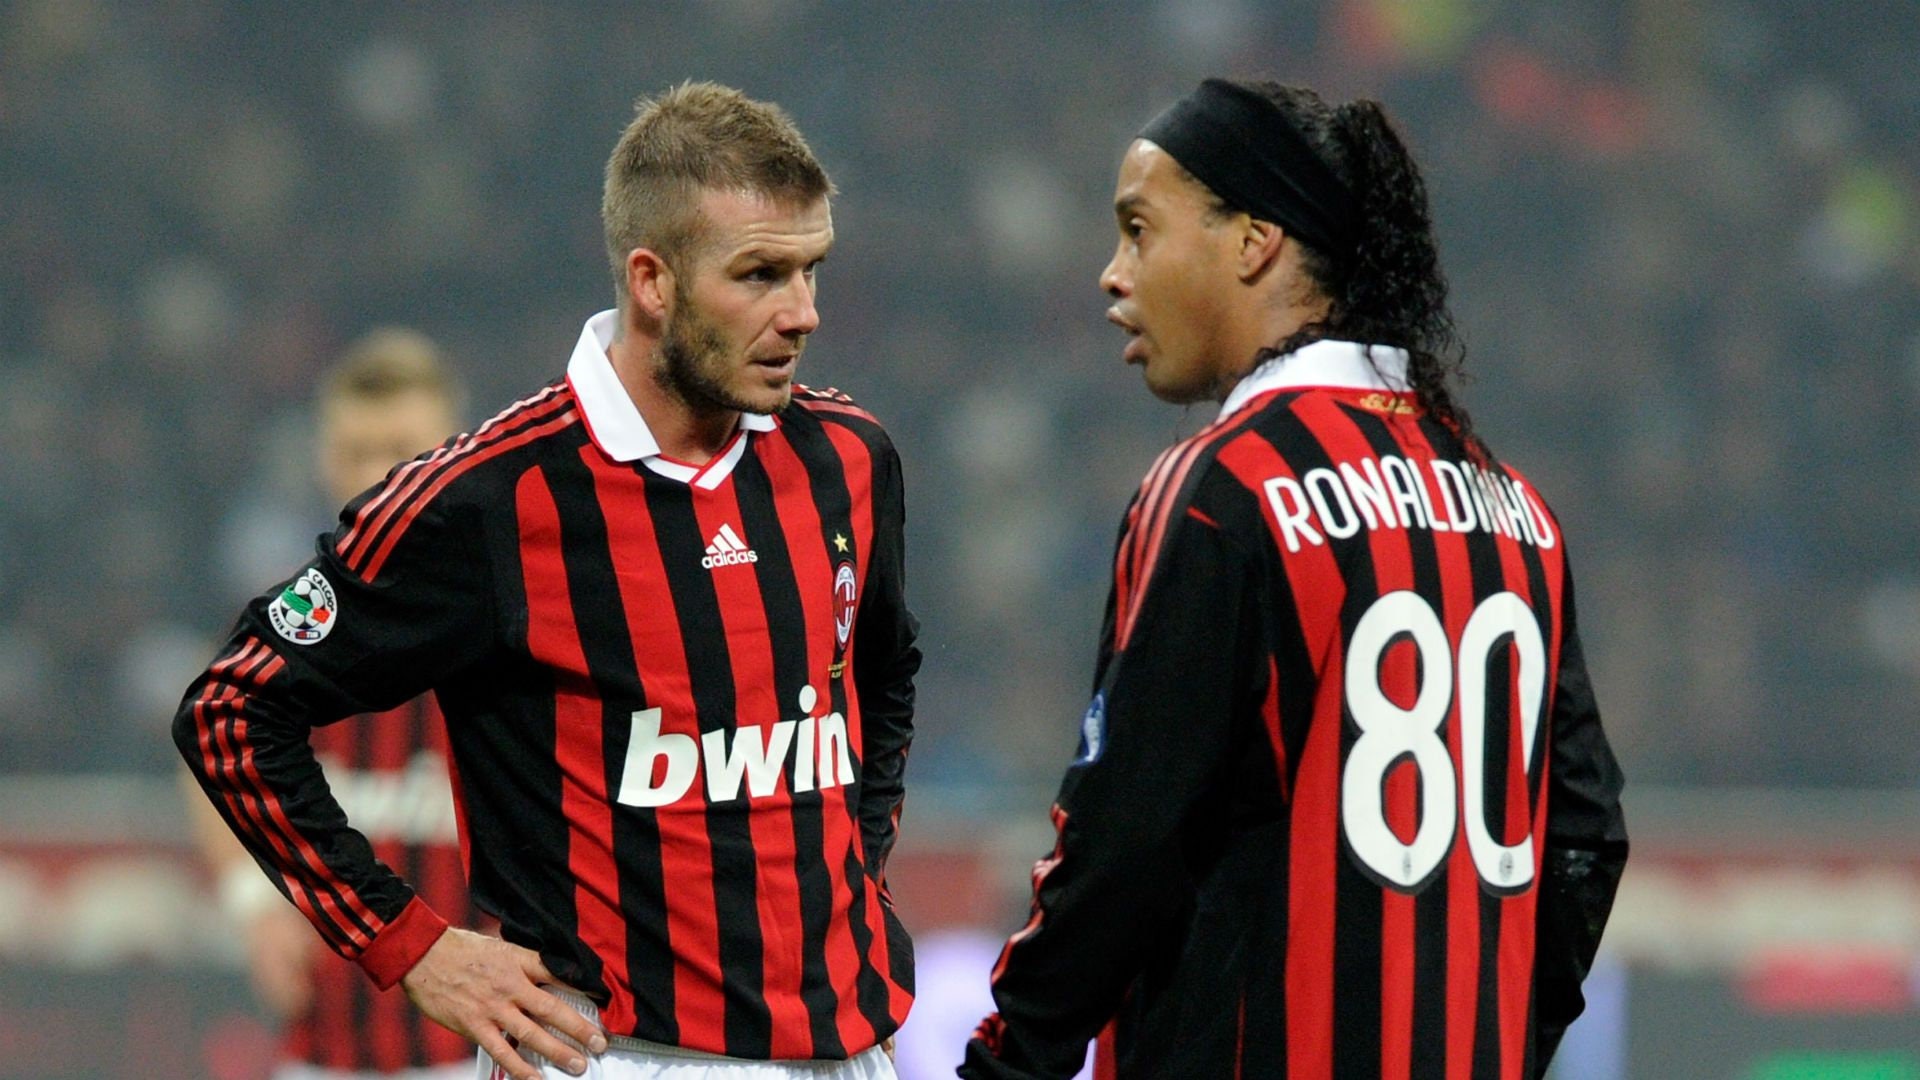 AC Milan 2009/2010 home retro shirt long sleeves#ronaldinho #ronaldinh, Ronaldinho